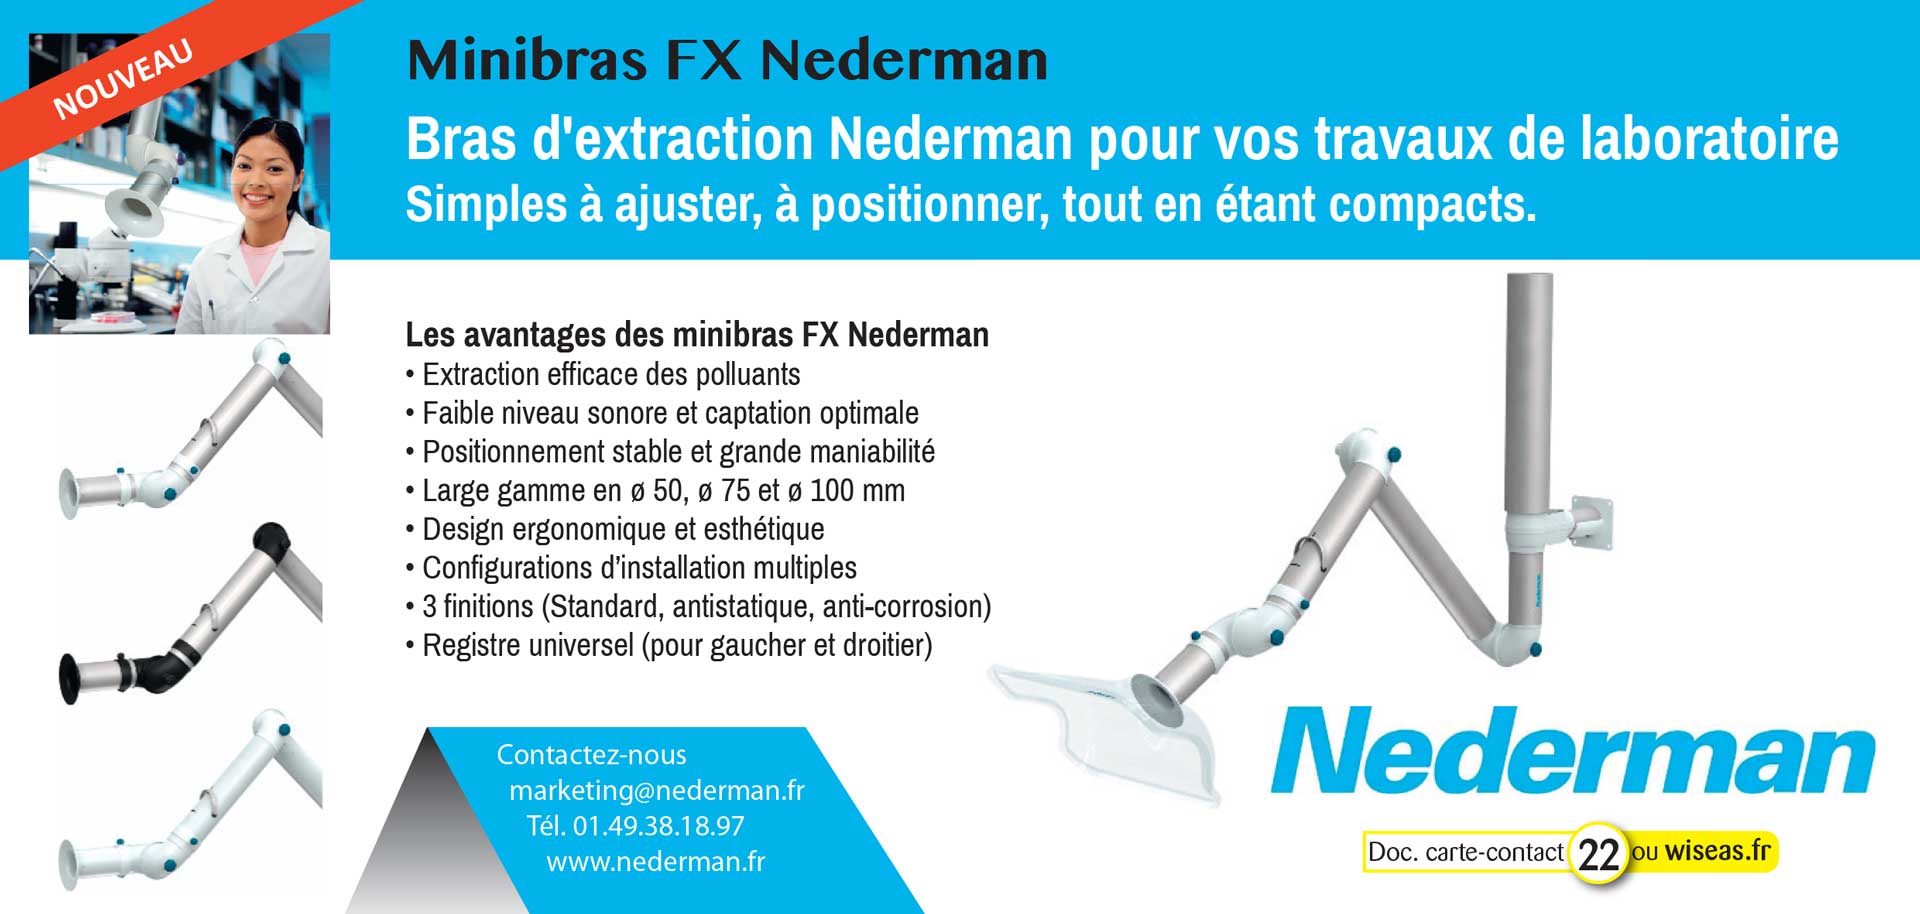 Minibras FX Nederman